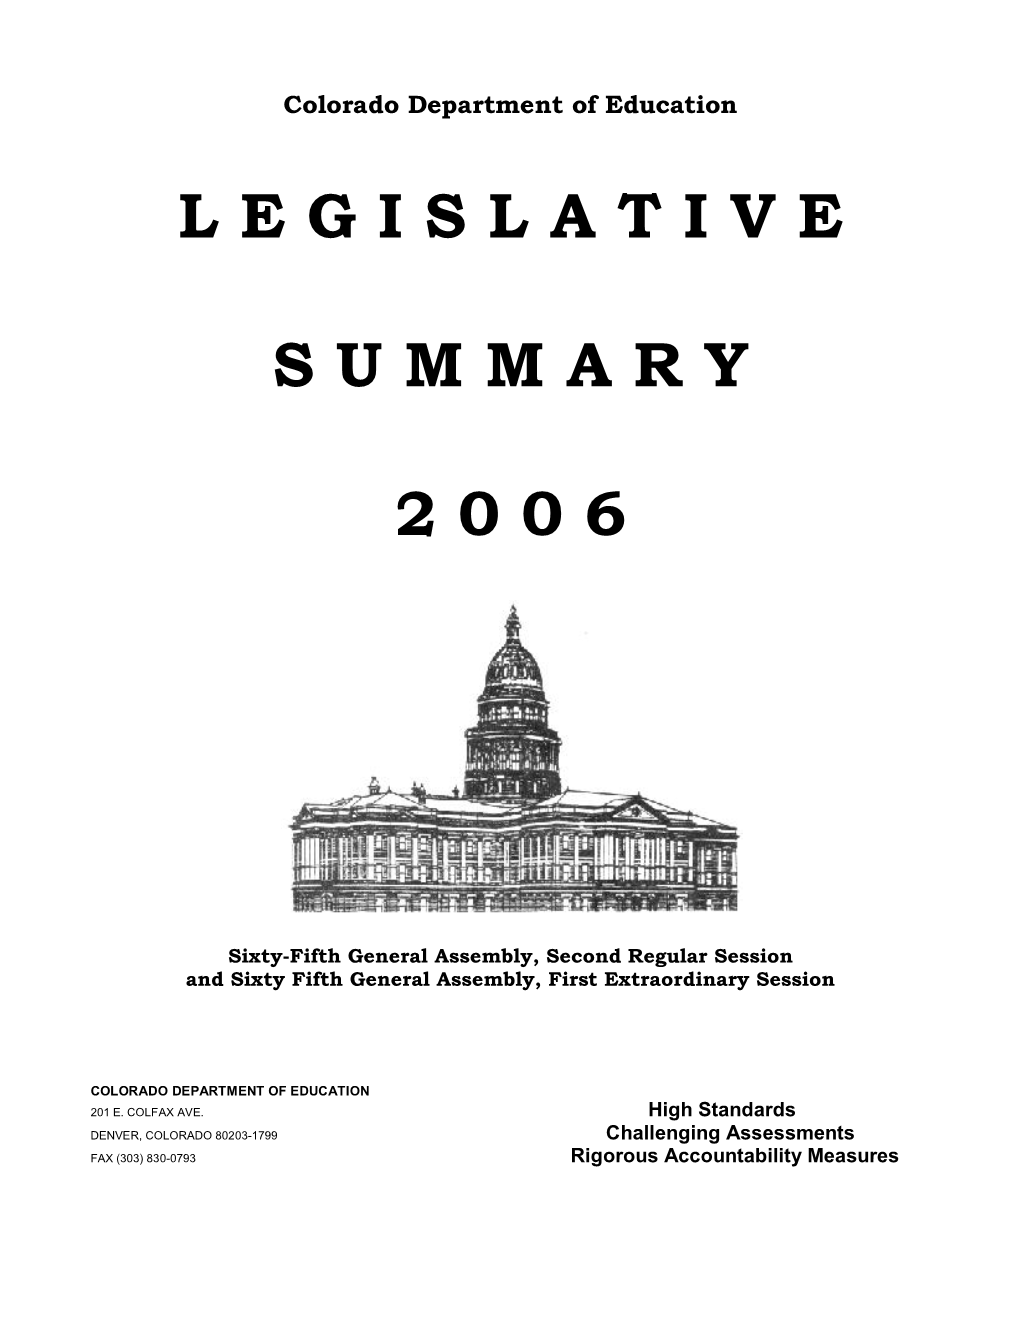 Legislative Summary 2 0